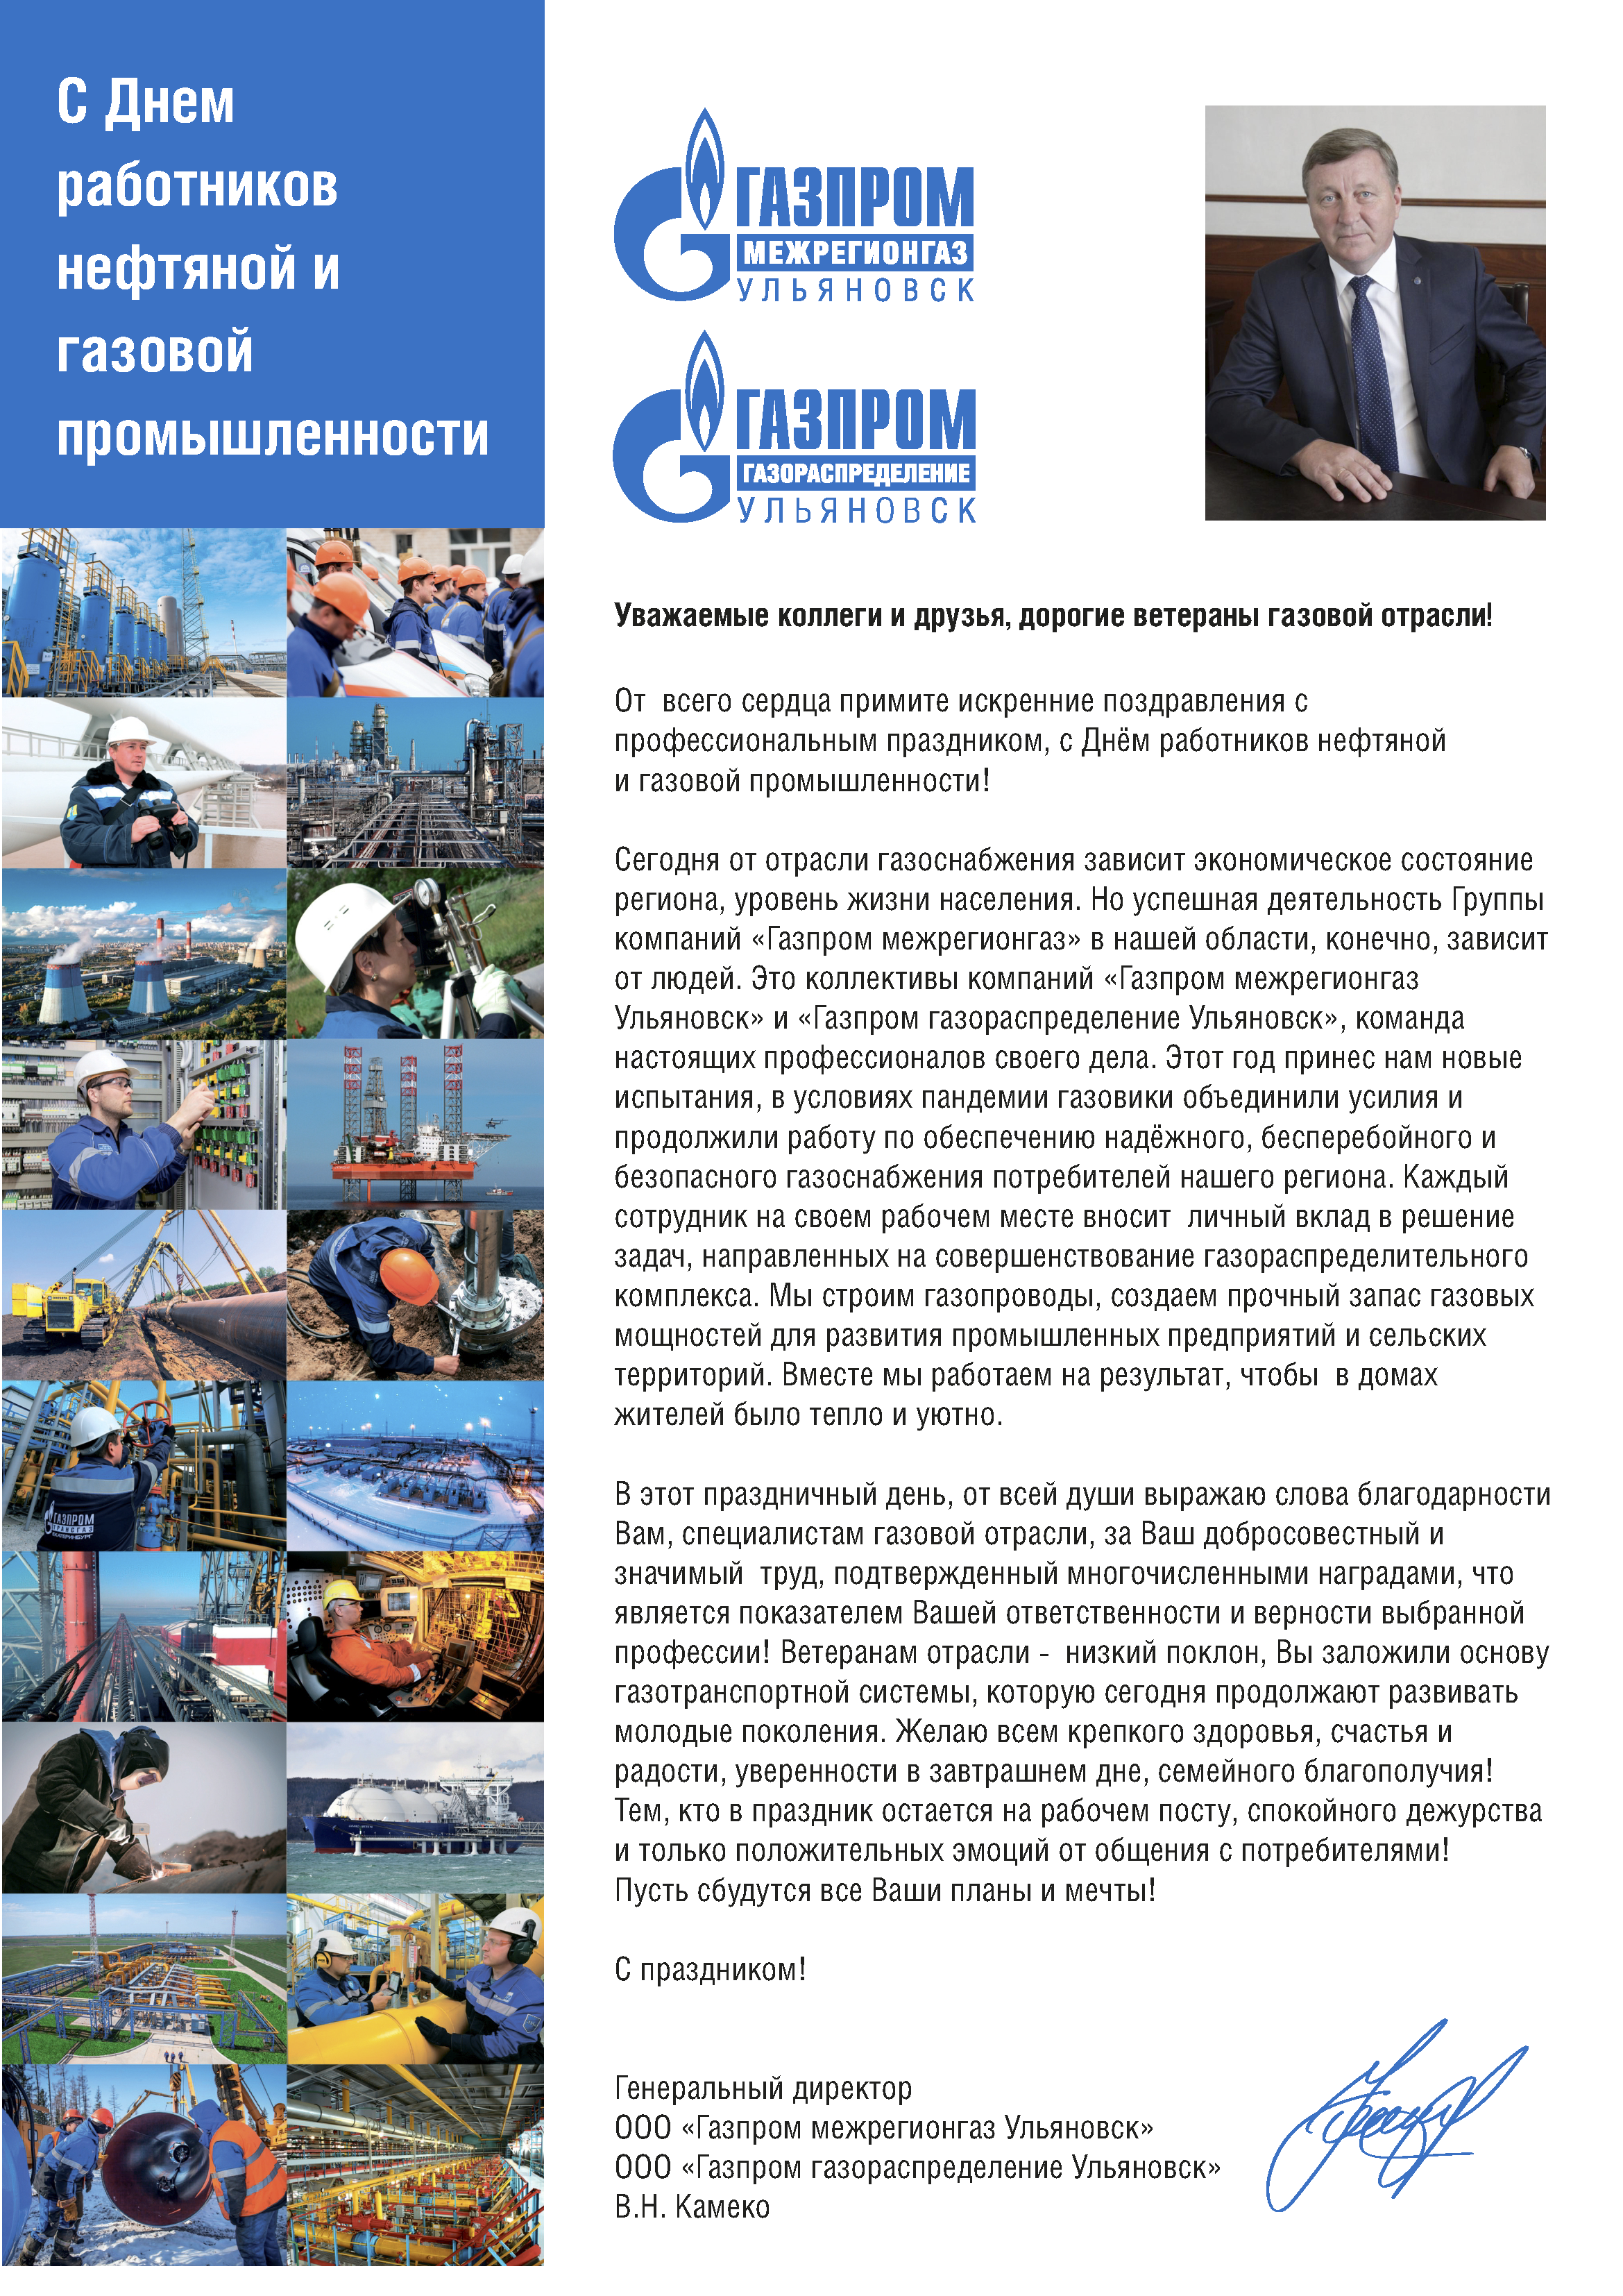 Поздравление с Днем работников нефтяной и газовой промышленности генерального директора «Газпром межрегионгаз» Сергея Густова